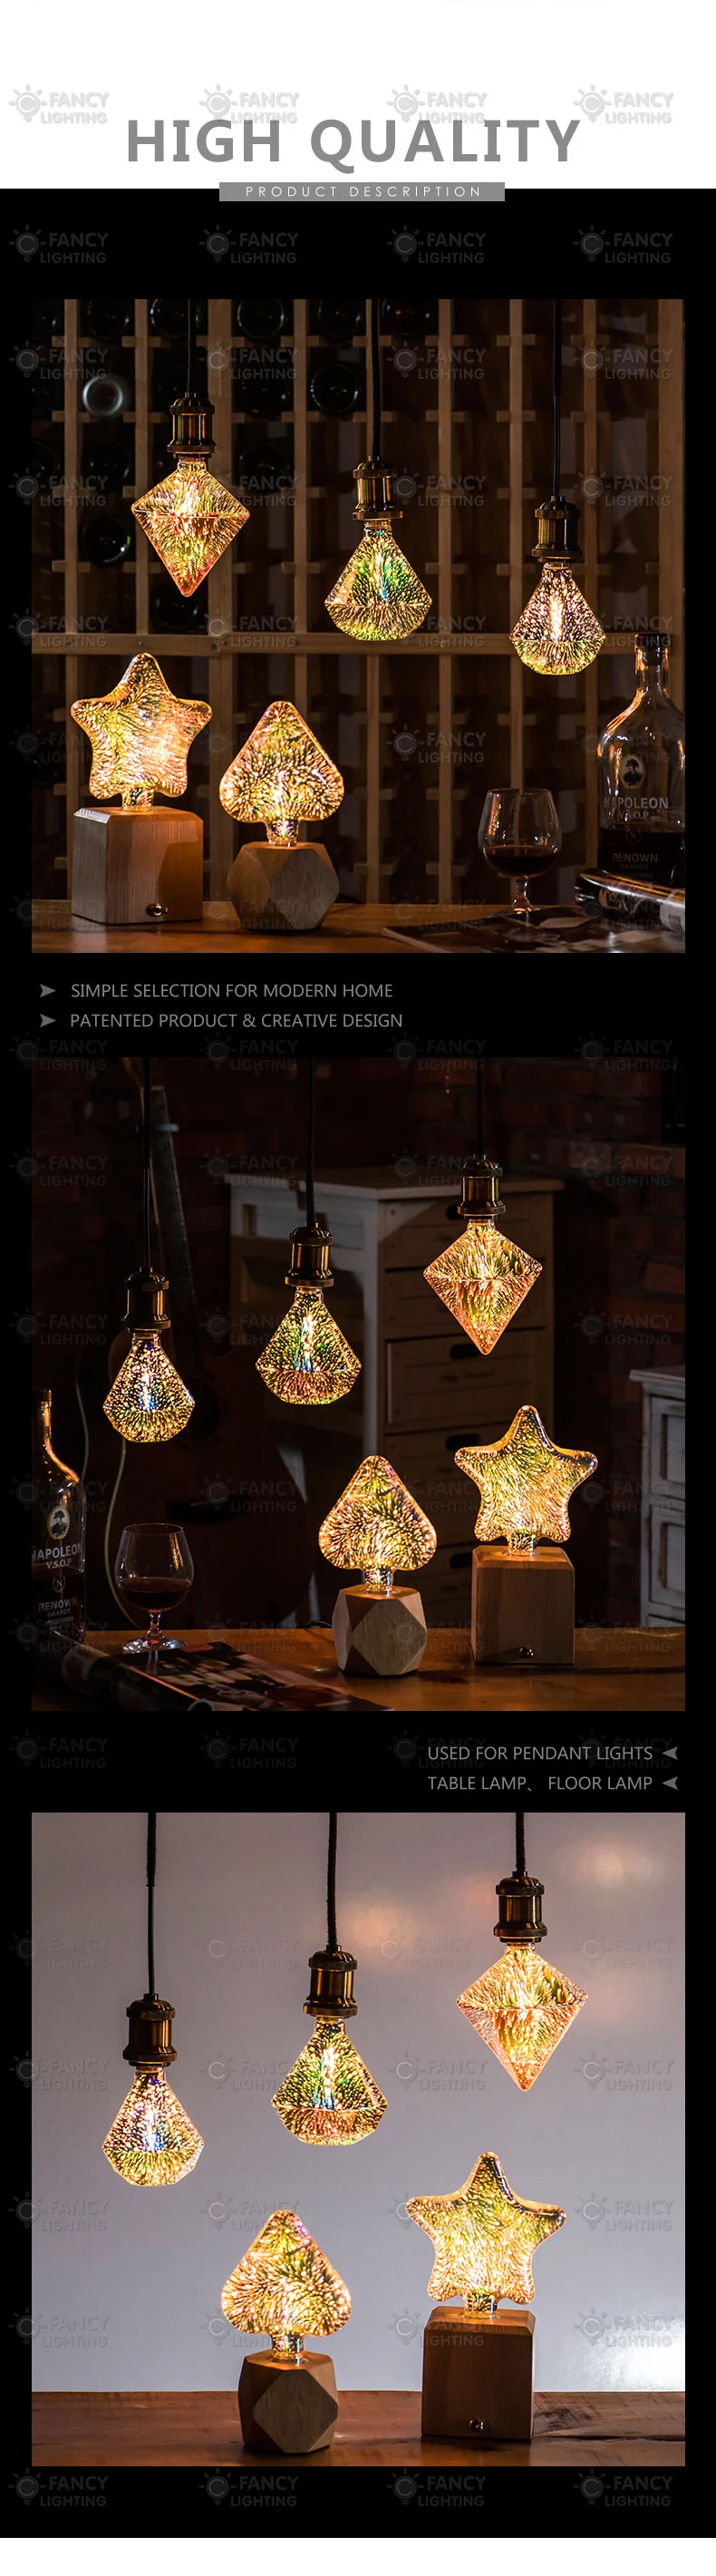 Светодиодная лампа Star/Heart/Diamond 3D bombillas Led 110 V/220 V Рождественская лампочка для подарка дома/гостиной/спальни Декор ampoule led